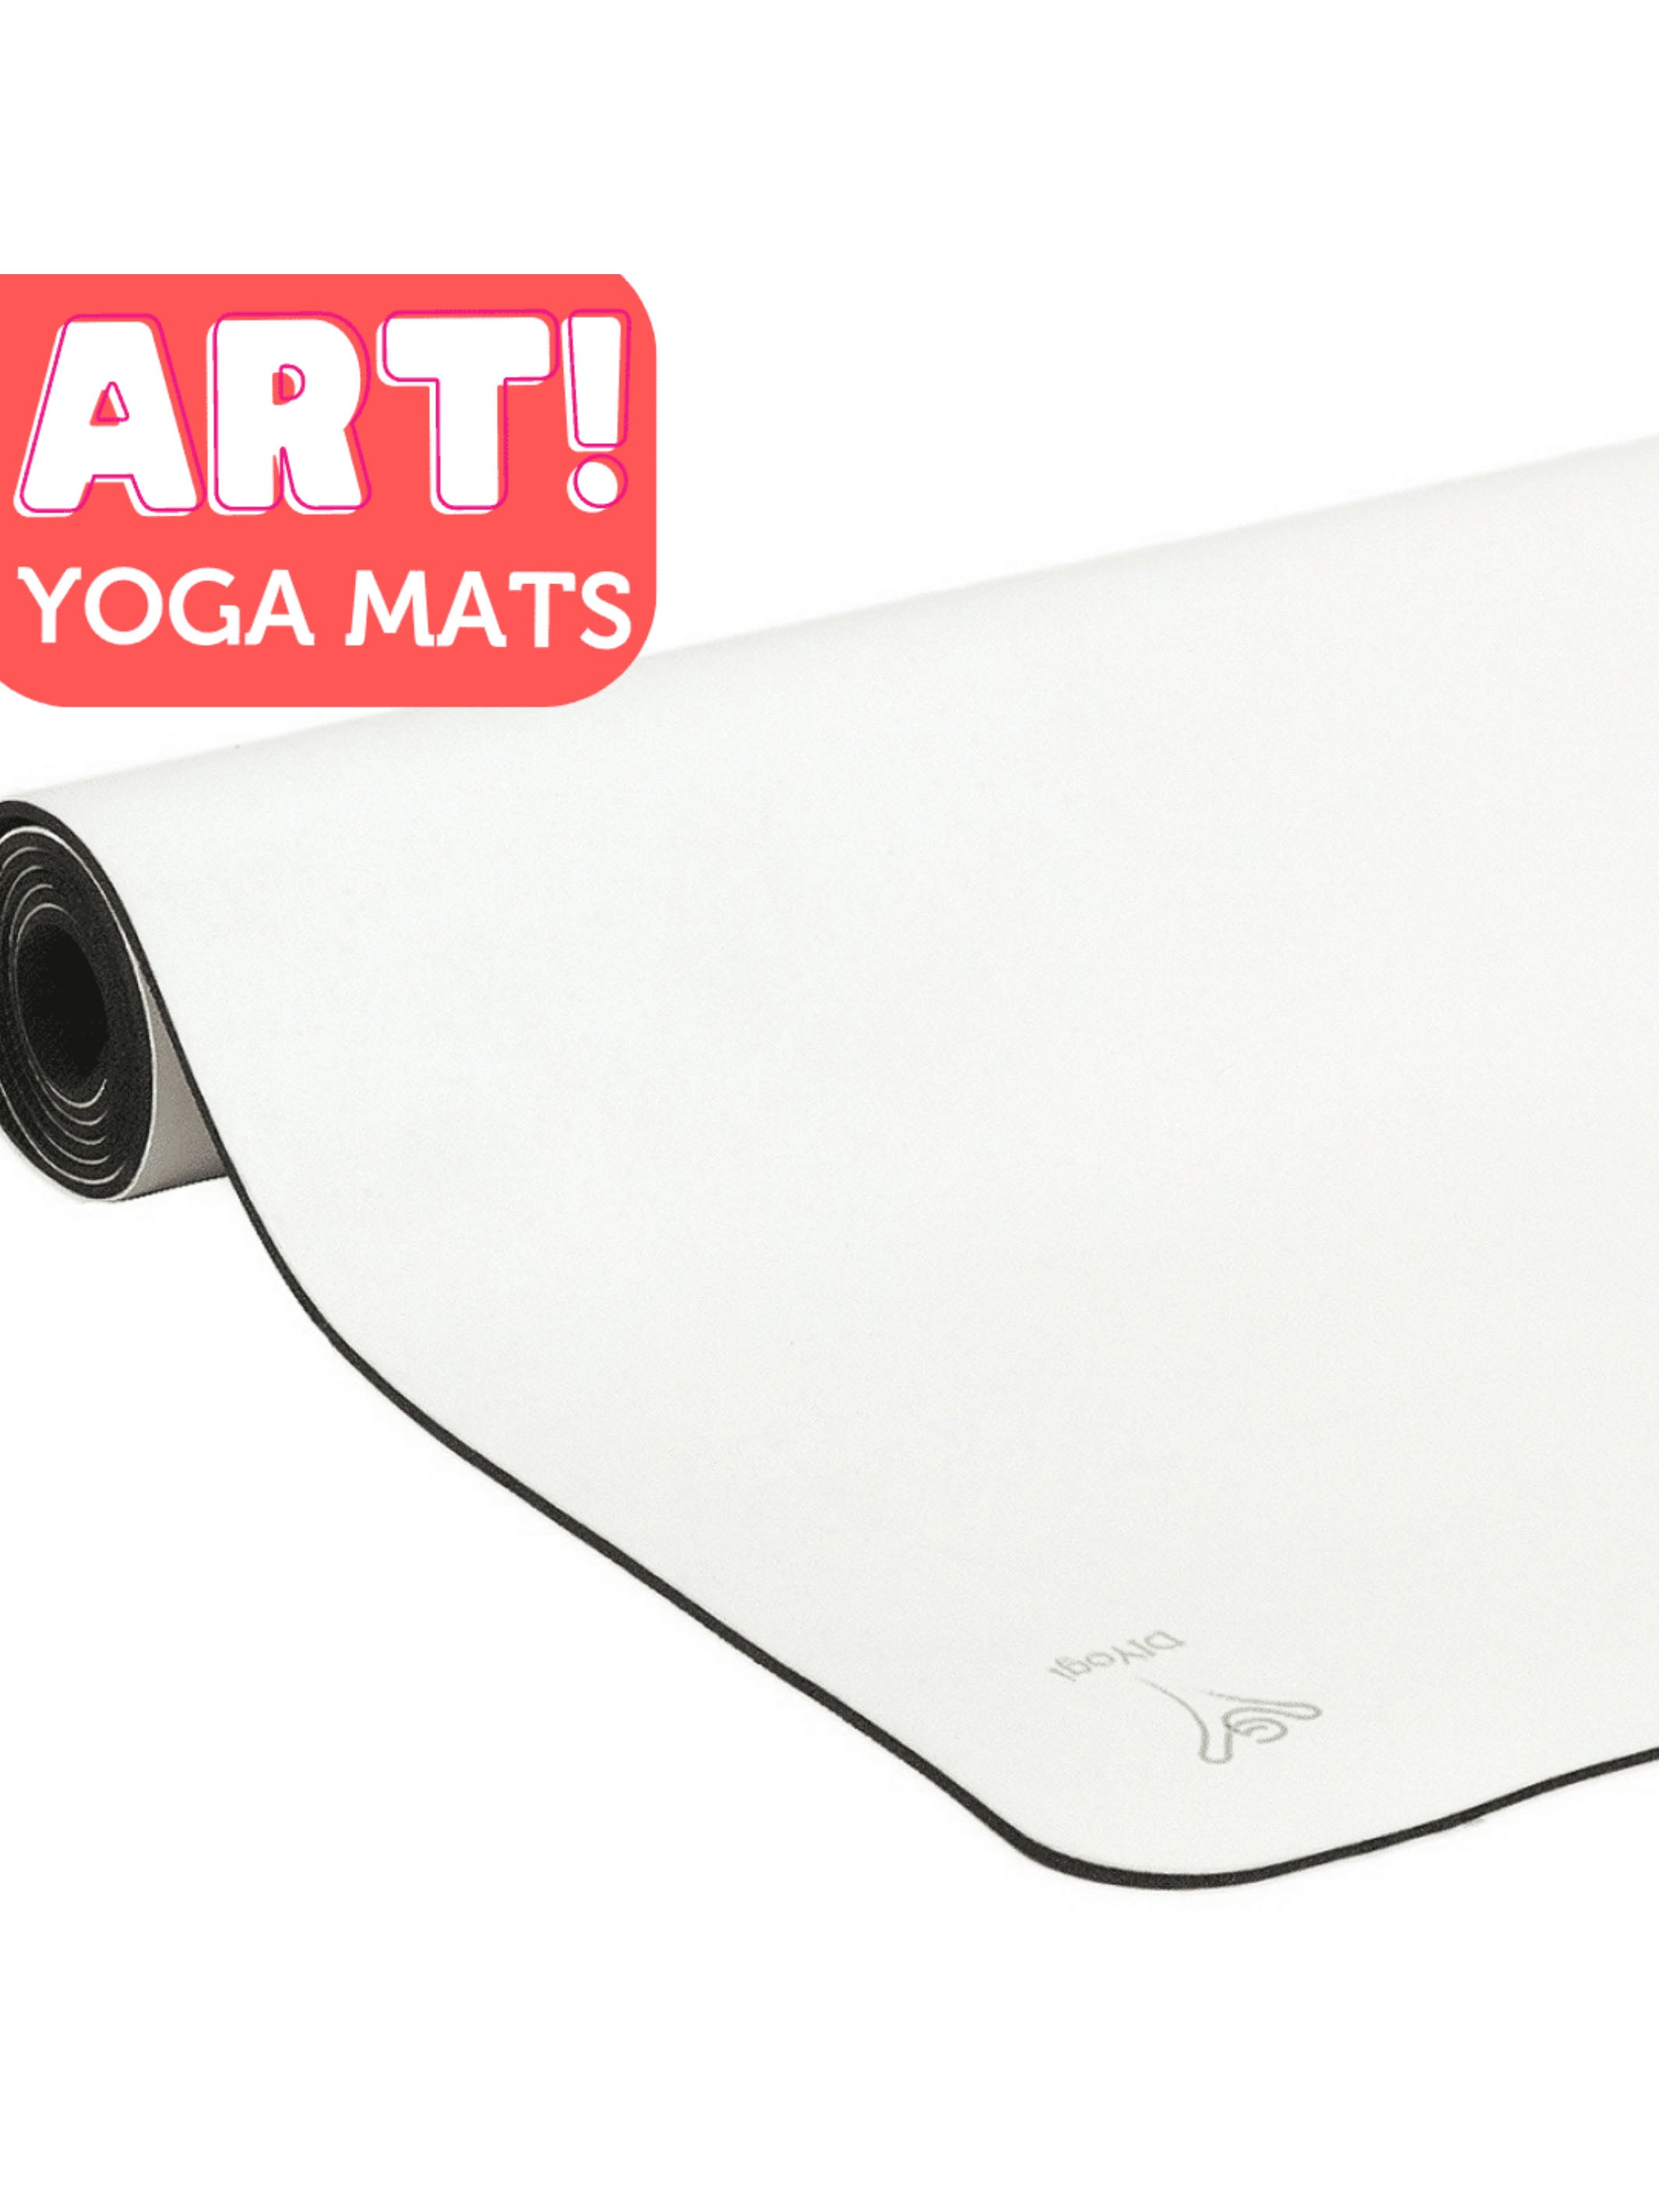 DIYogi Yoga Mats: The best grip yoga mats with antibacterial core –